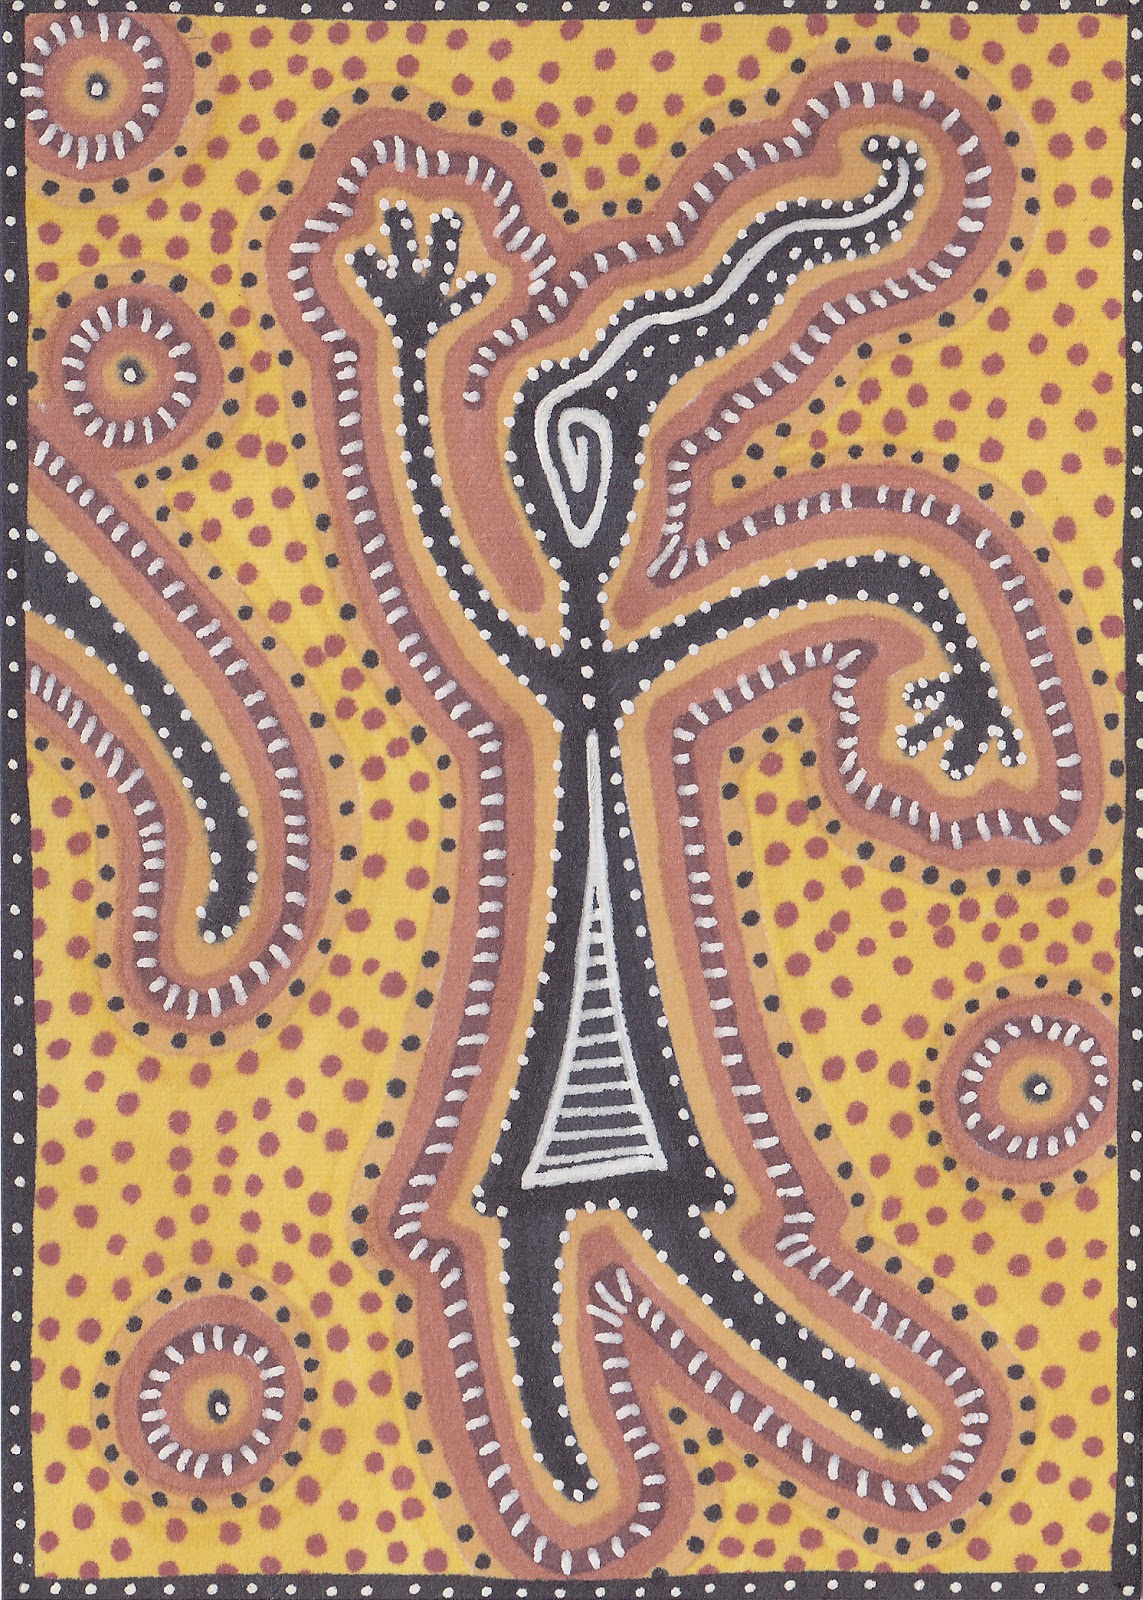 sunkissed corner Australian Aboriginal Art Swap